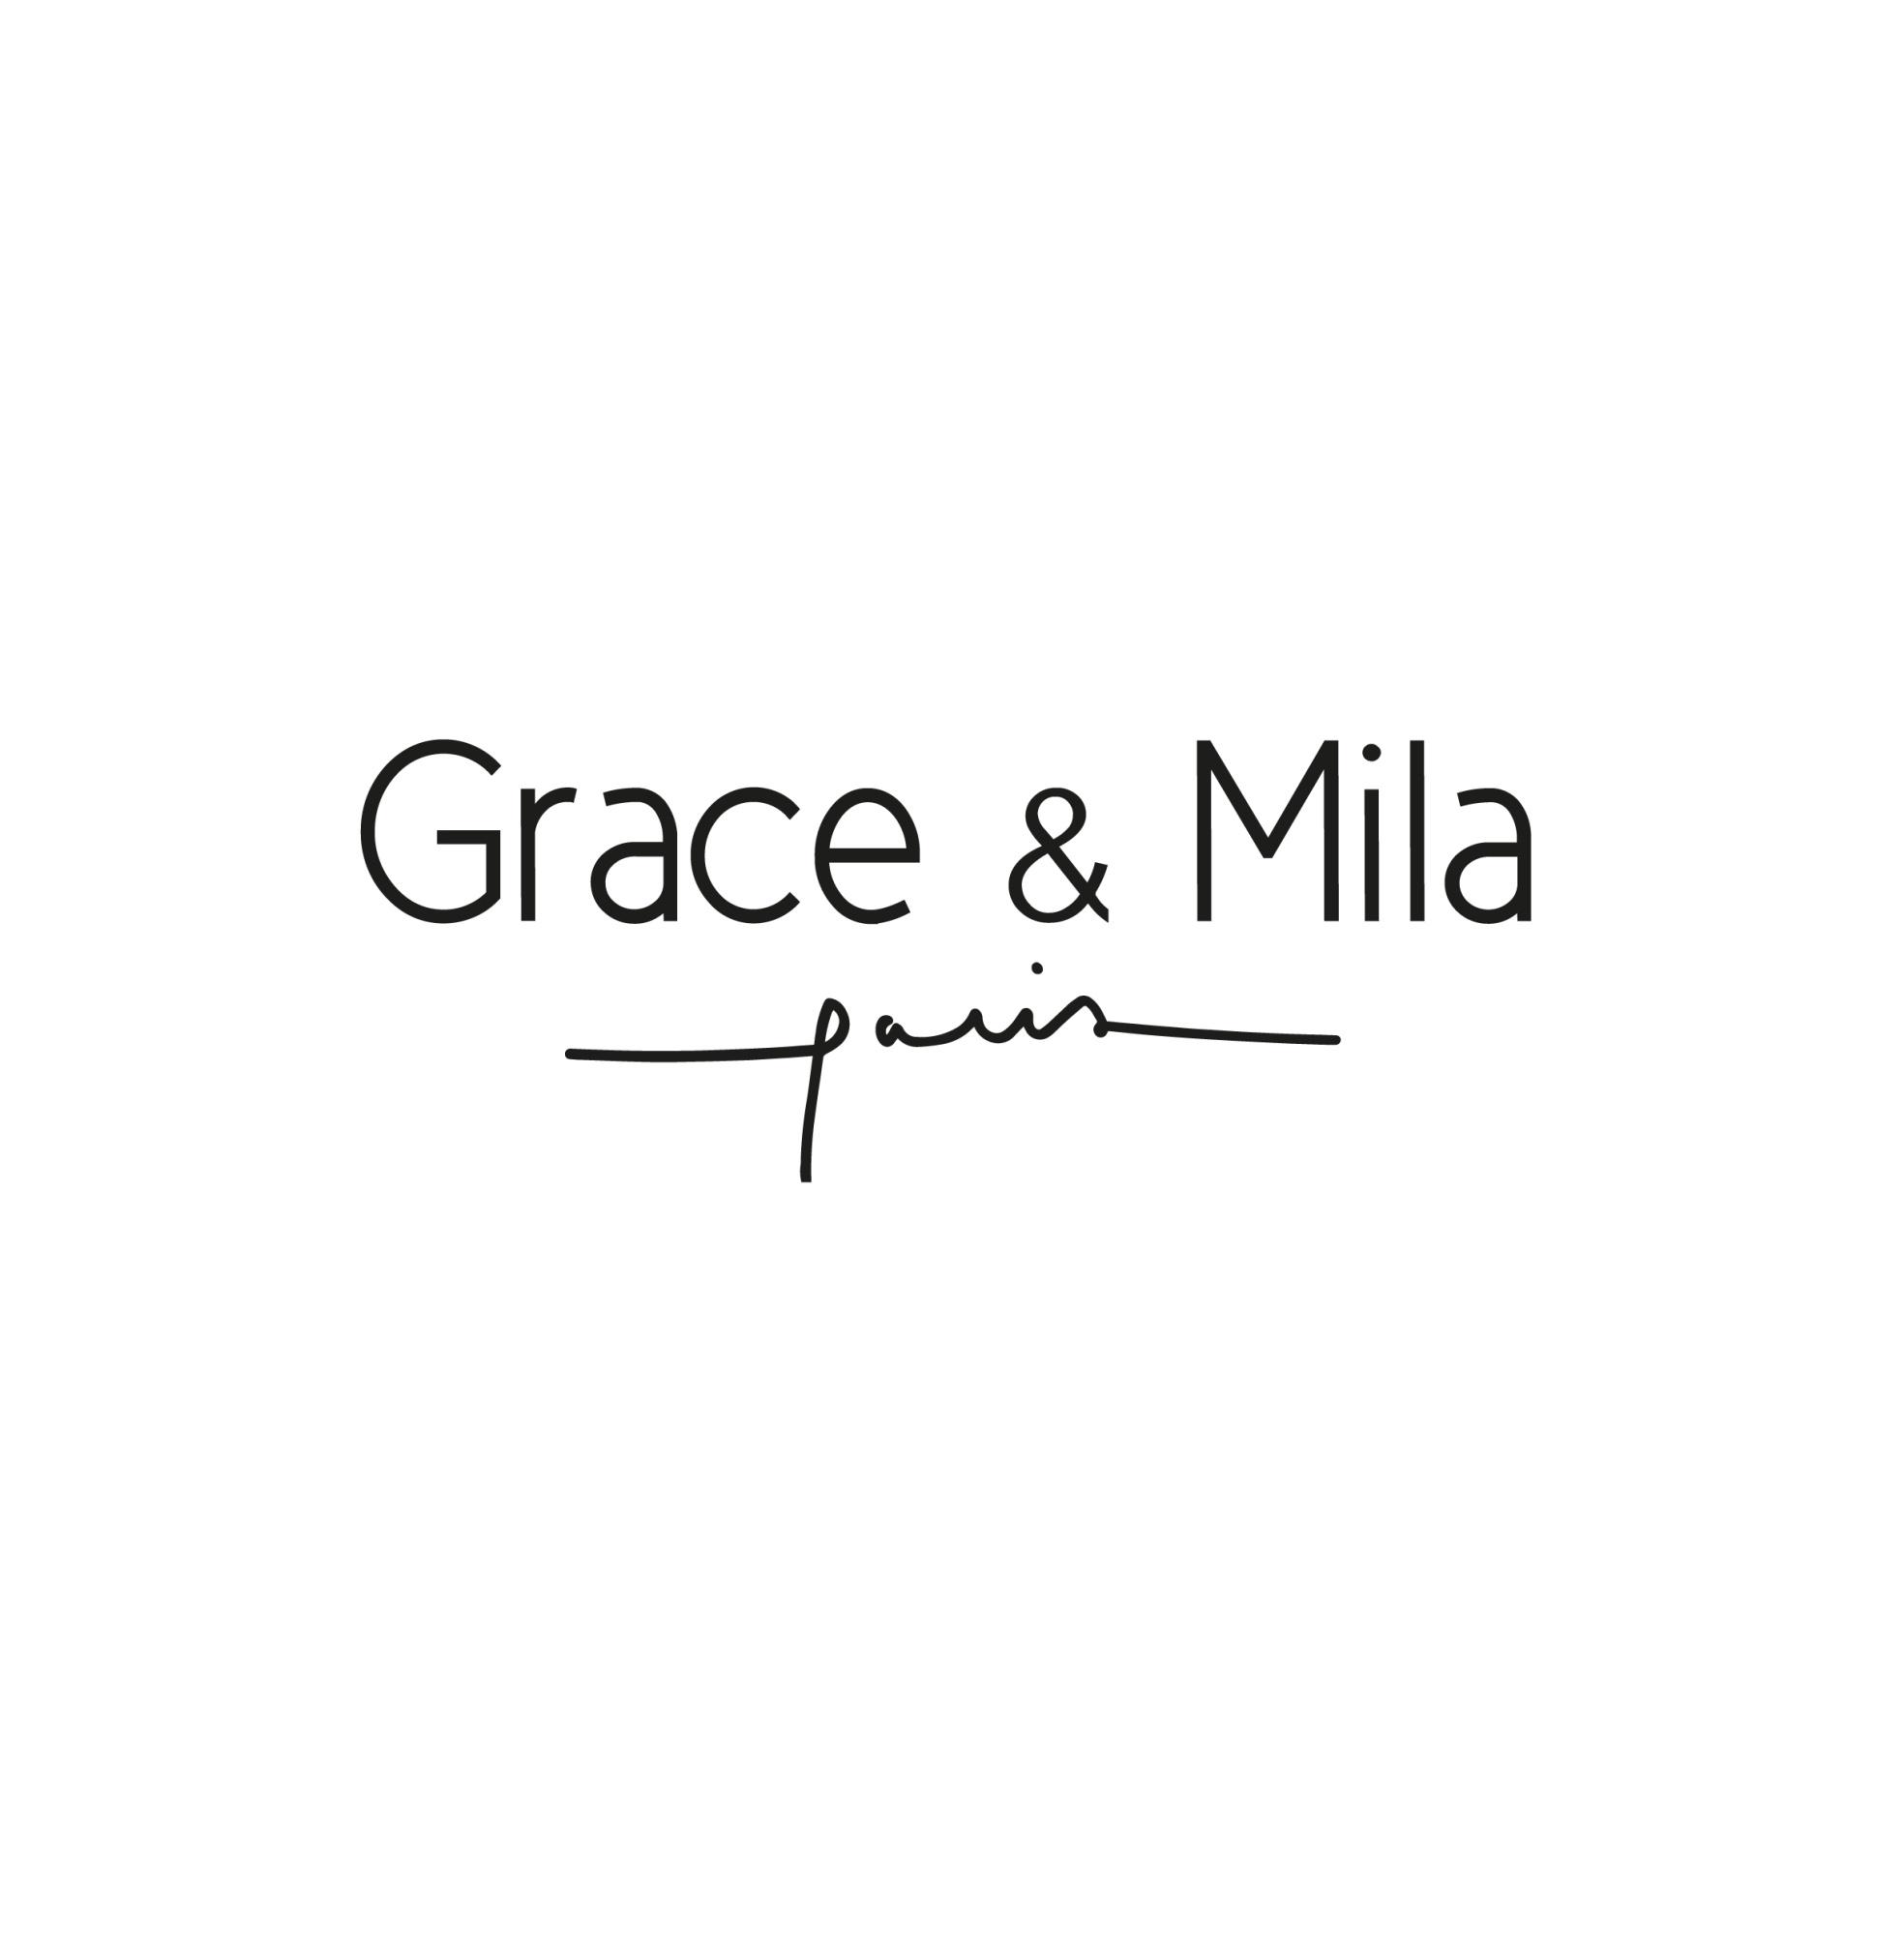 Grace & Mila - Siège Social Pantin